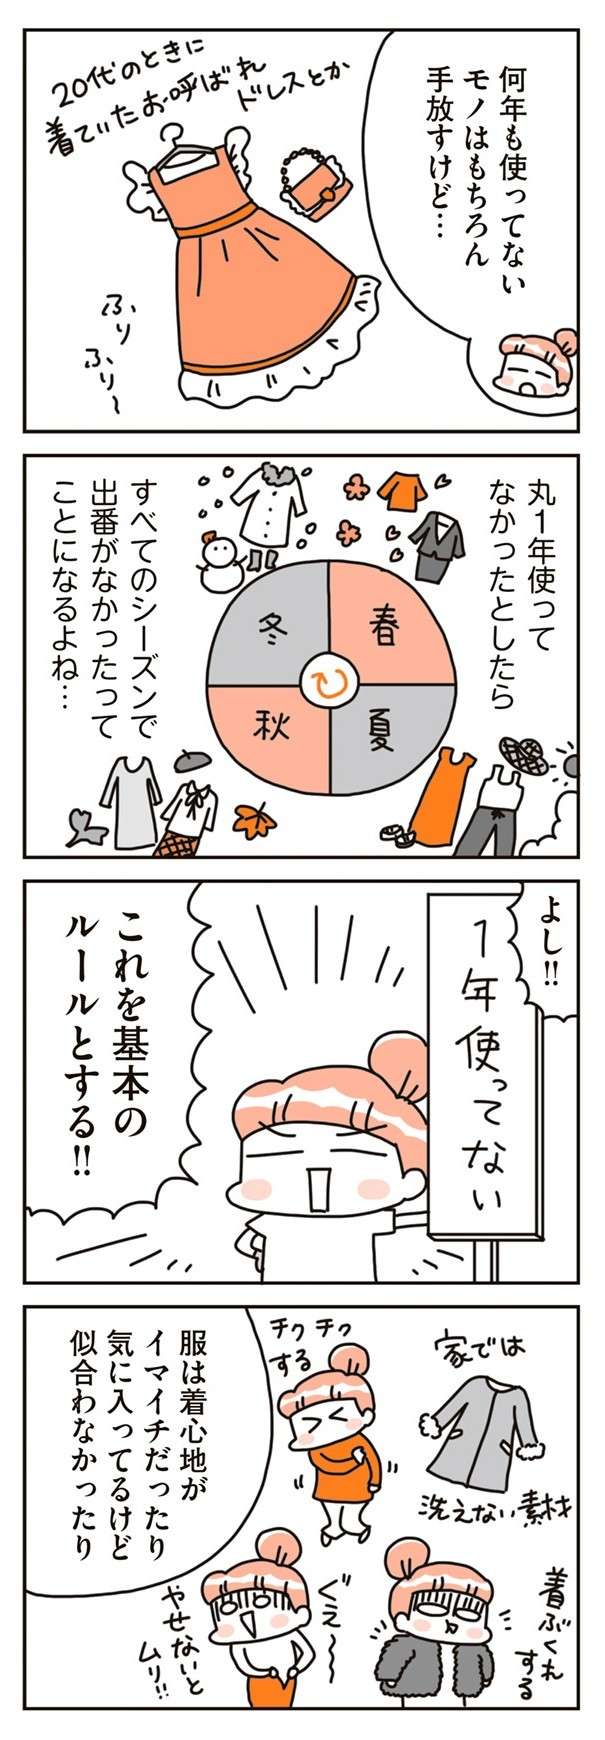 chintaika_mochiieka14-7.jpg